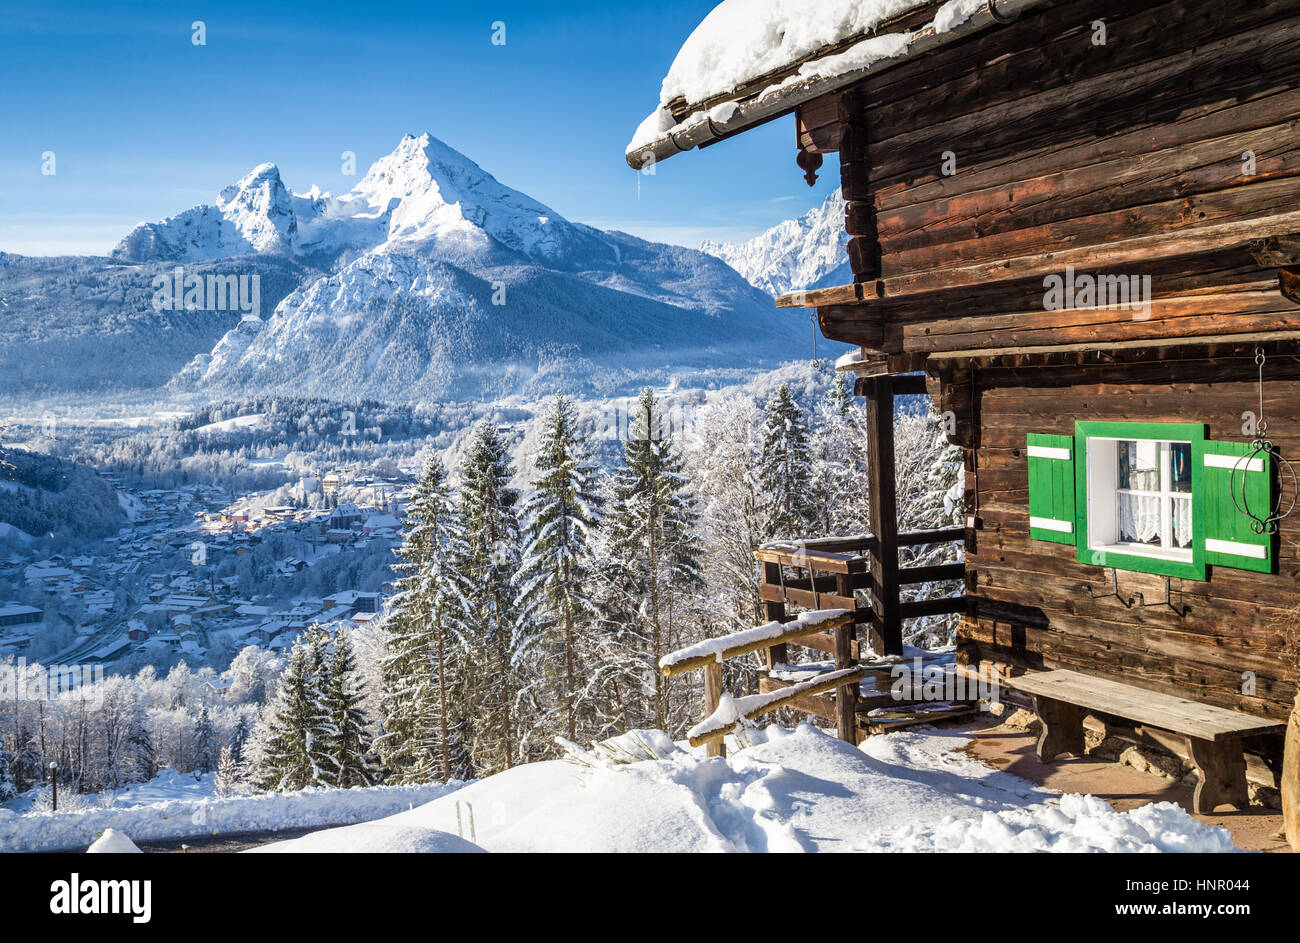 Bellissima vista della Scenic bianco inverno paese delle meraviglie del paesaggio di montagna delle Alpi con tradizionale baita in legno in una fredda giornata di sole Foto Stock